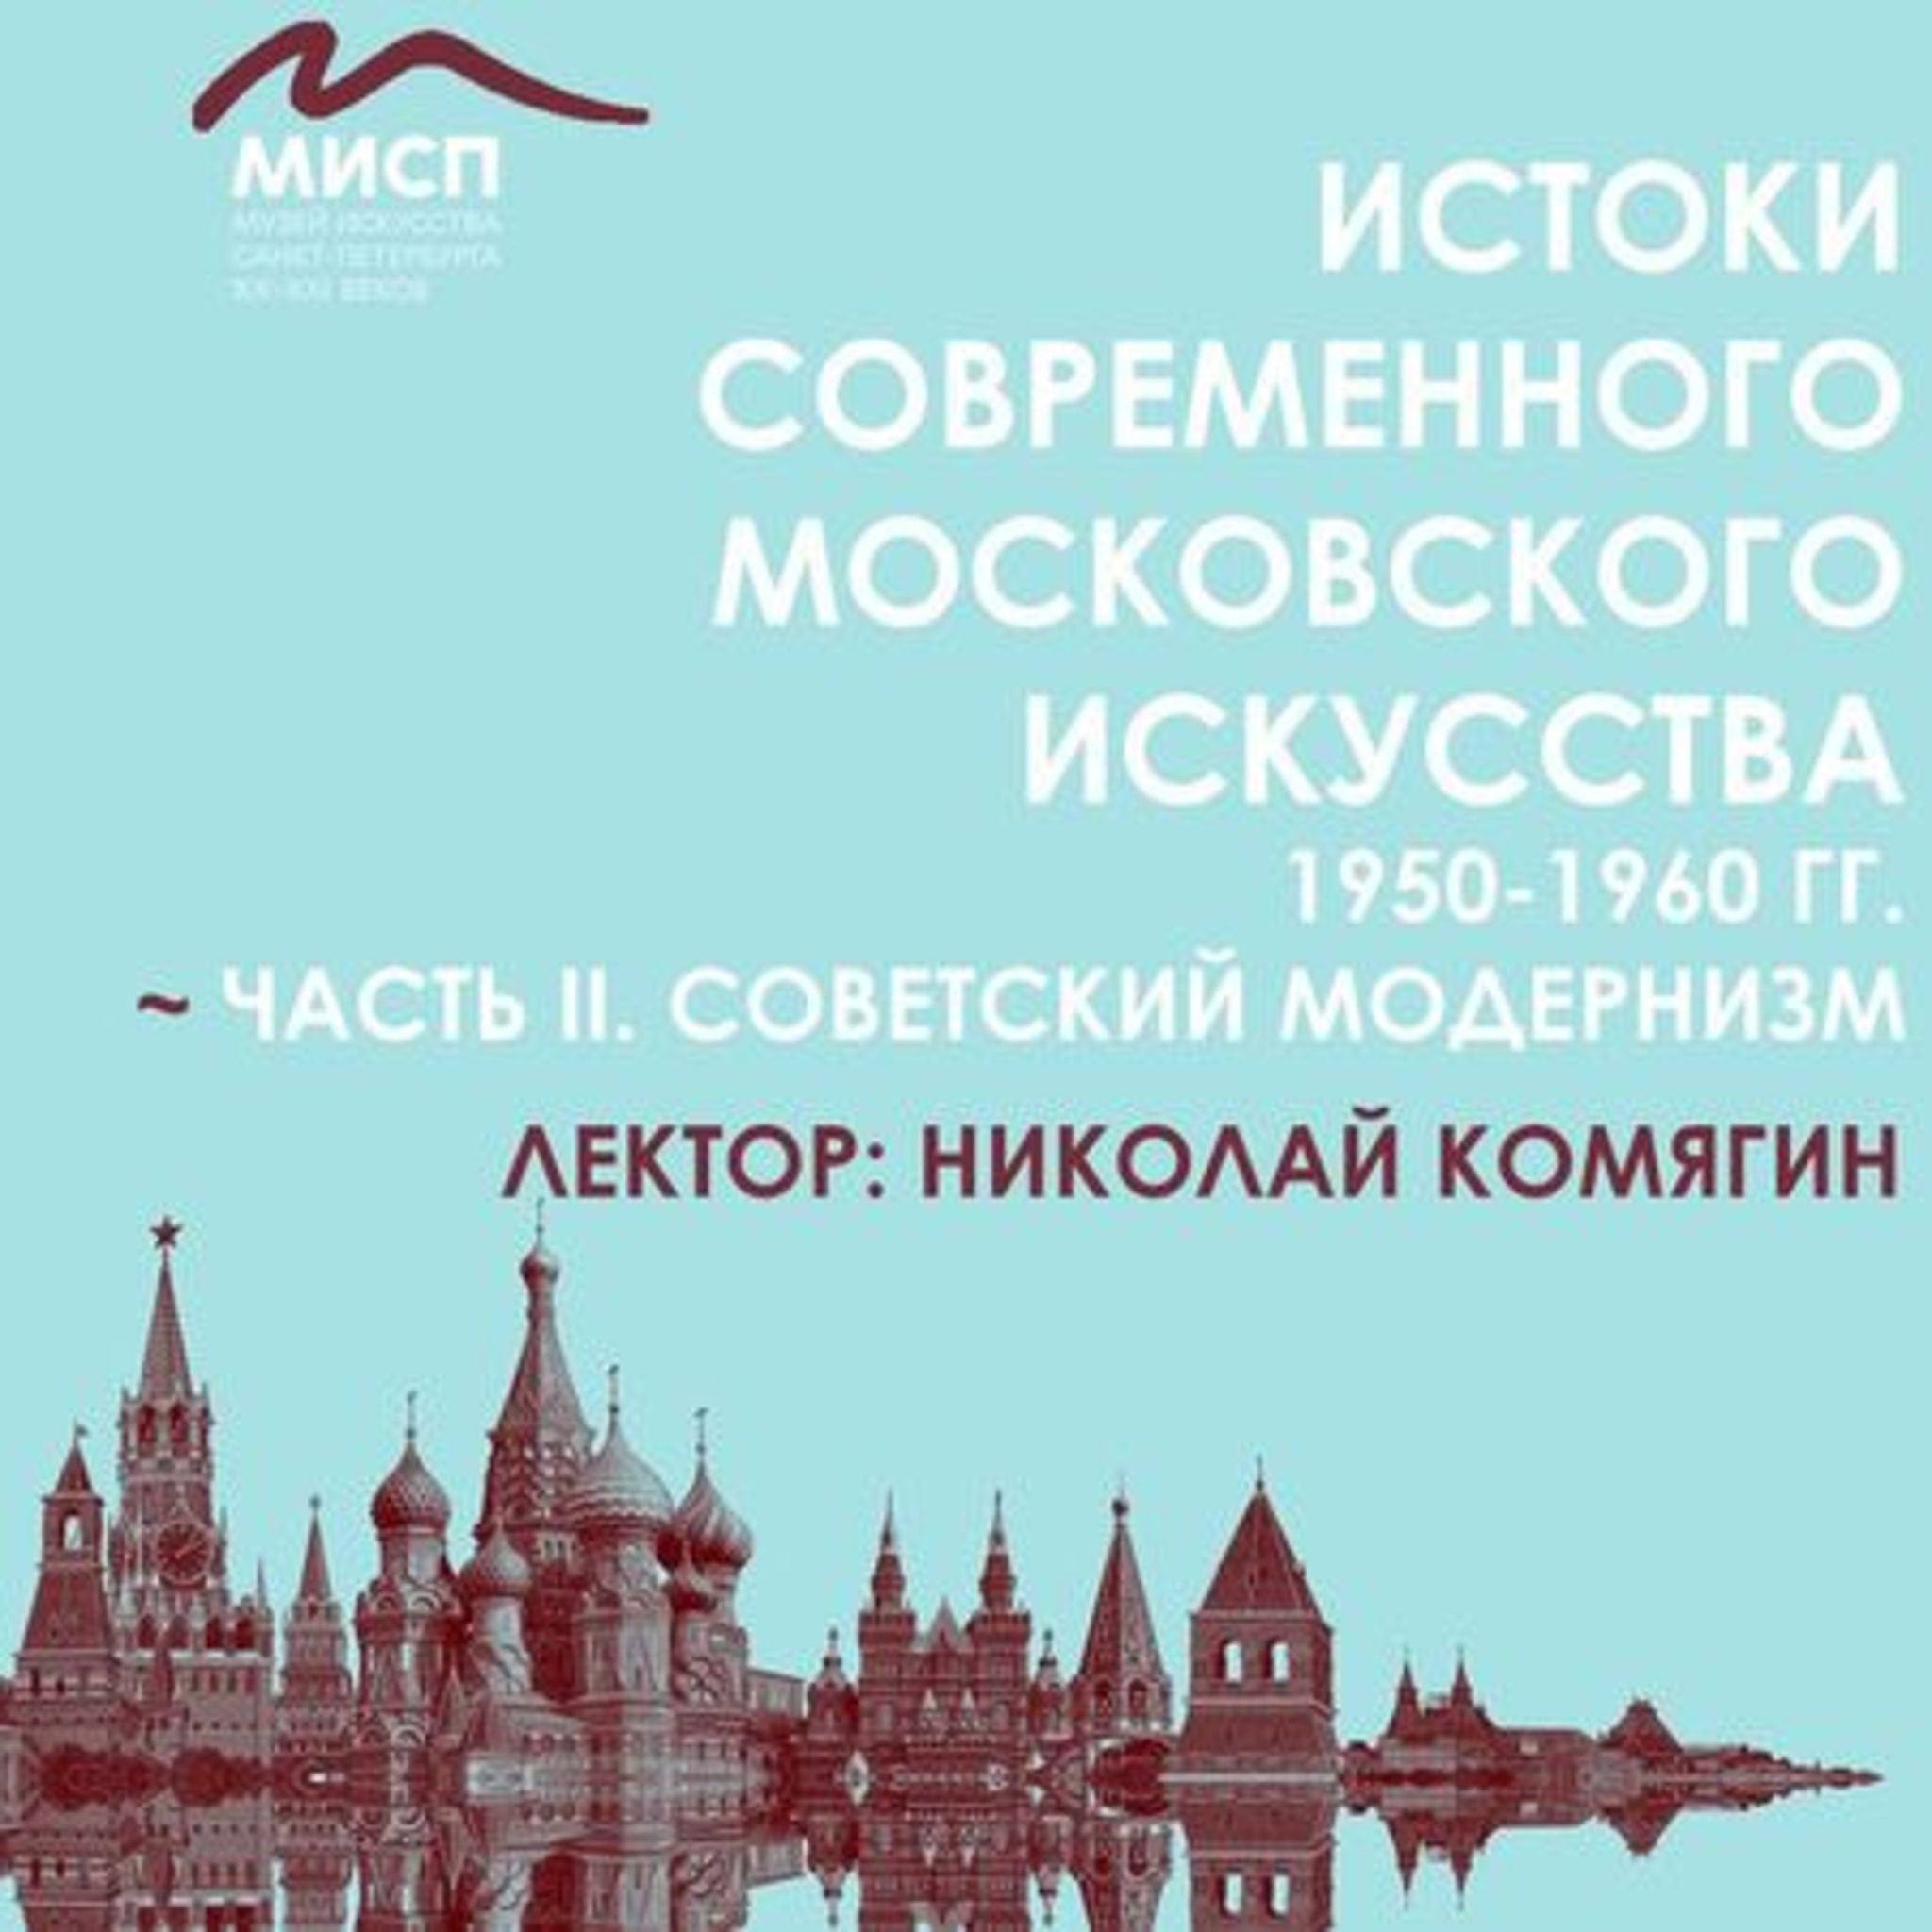 Lecture Soviet Art Modernism